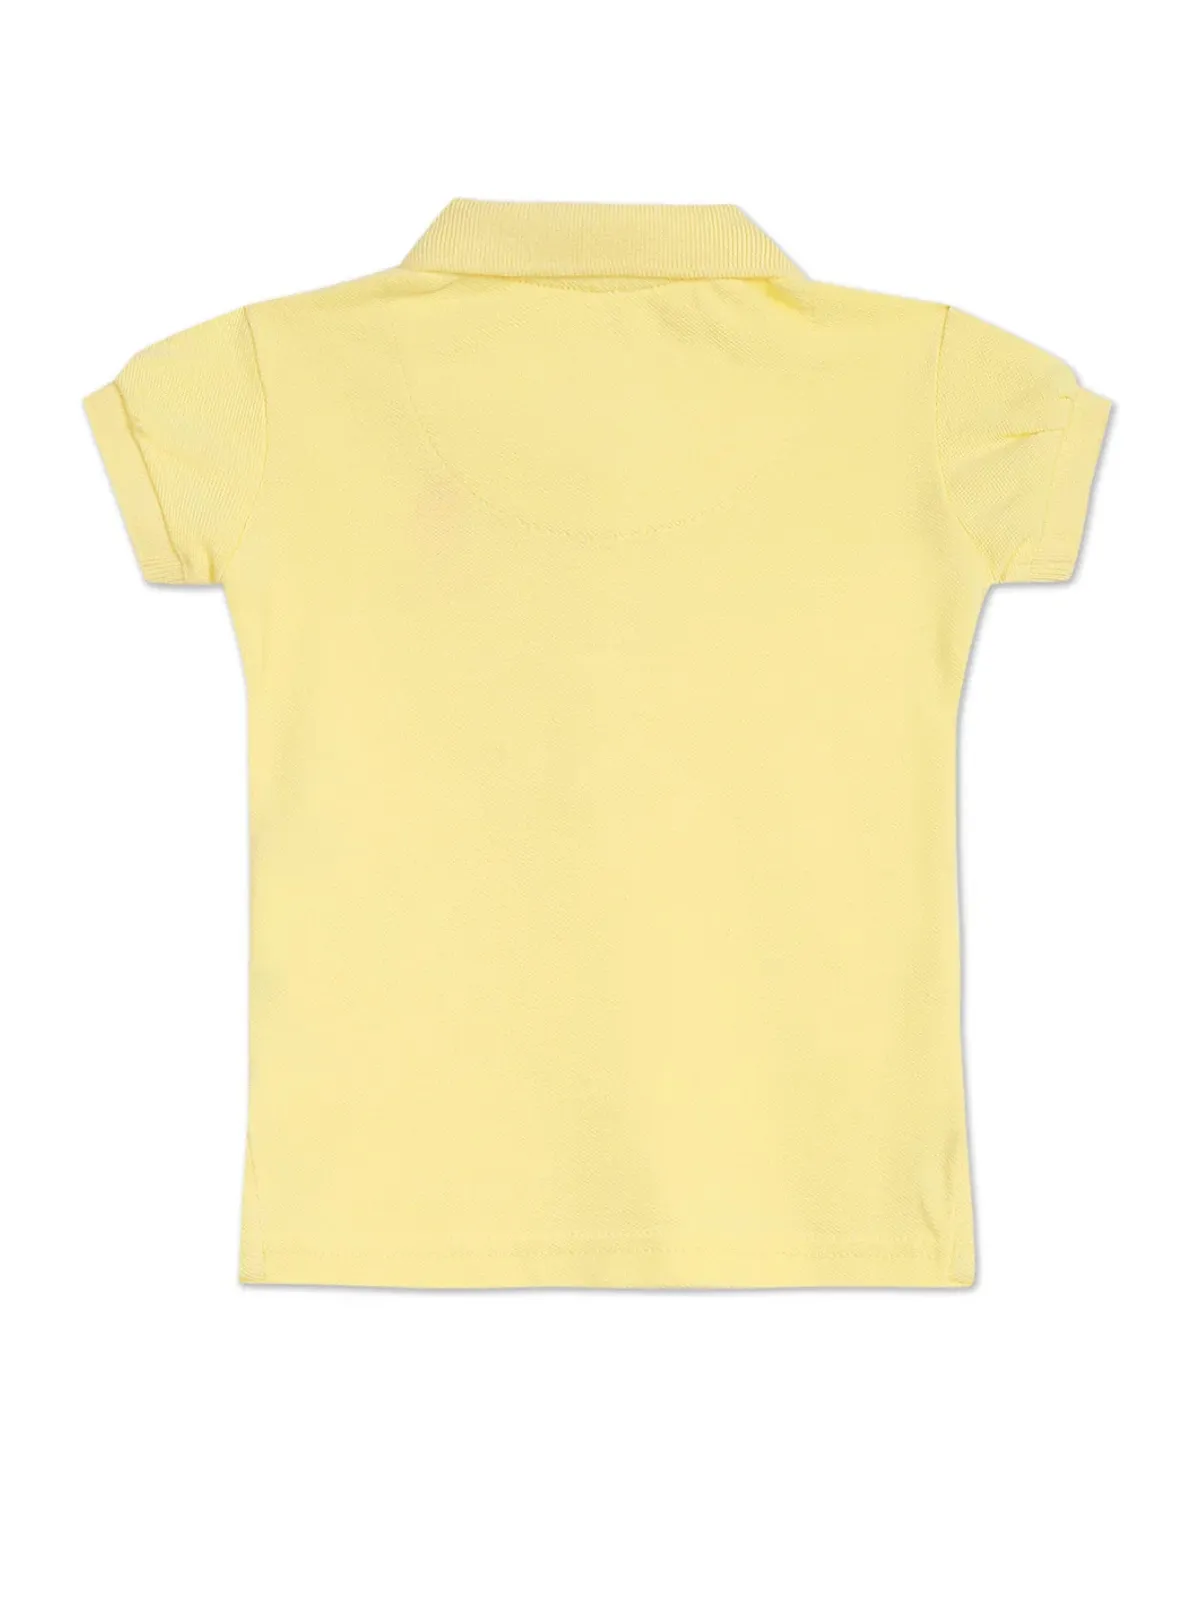 U S POLO ASSN light yellow plain girls t shirt